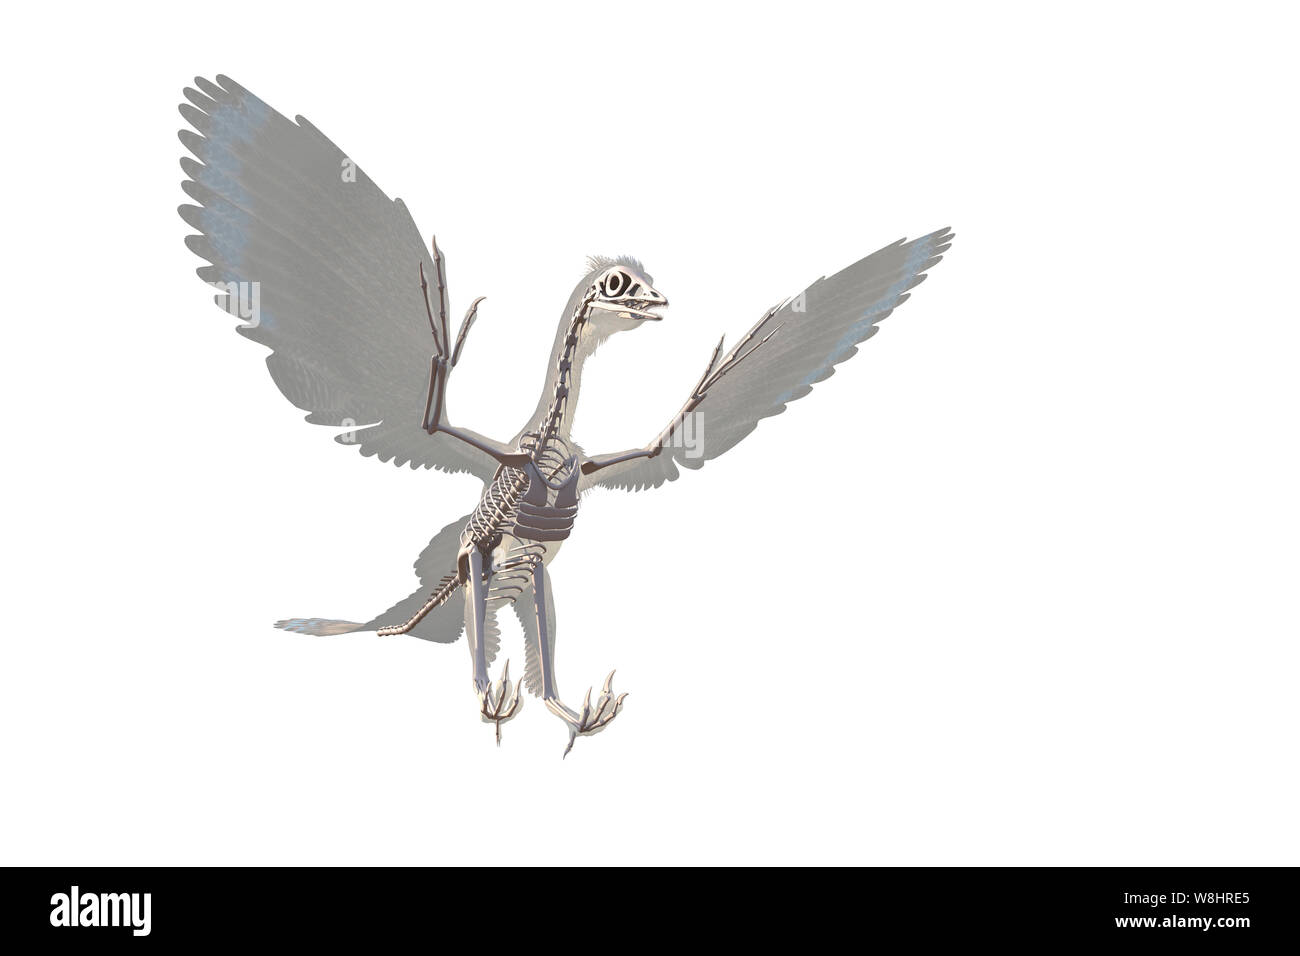 Archaeopteryx dinosauro struttura scheletrica contro uno sfondo bianco, illustrazione. Questi uccelli come i dinosauri vivevano circa 150 milioni di anni fa durante il tardo giurassico. Foto Stock